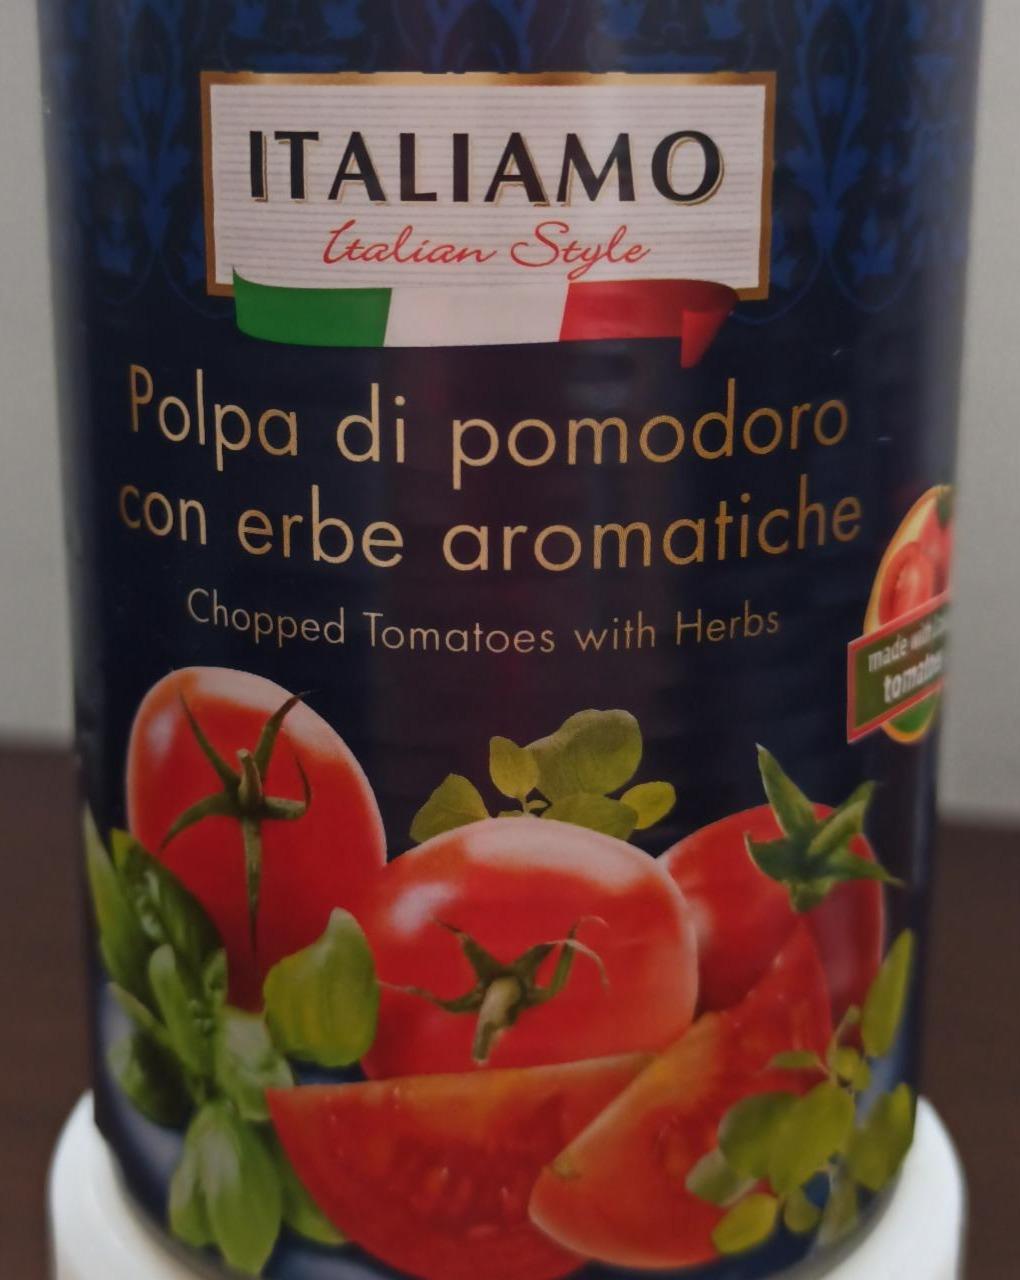 Fotografie - Polpa di pomodoro con erbe aromatiche Italiamo